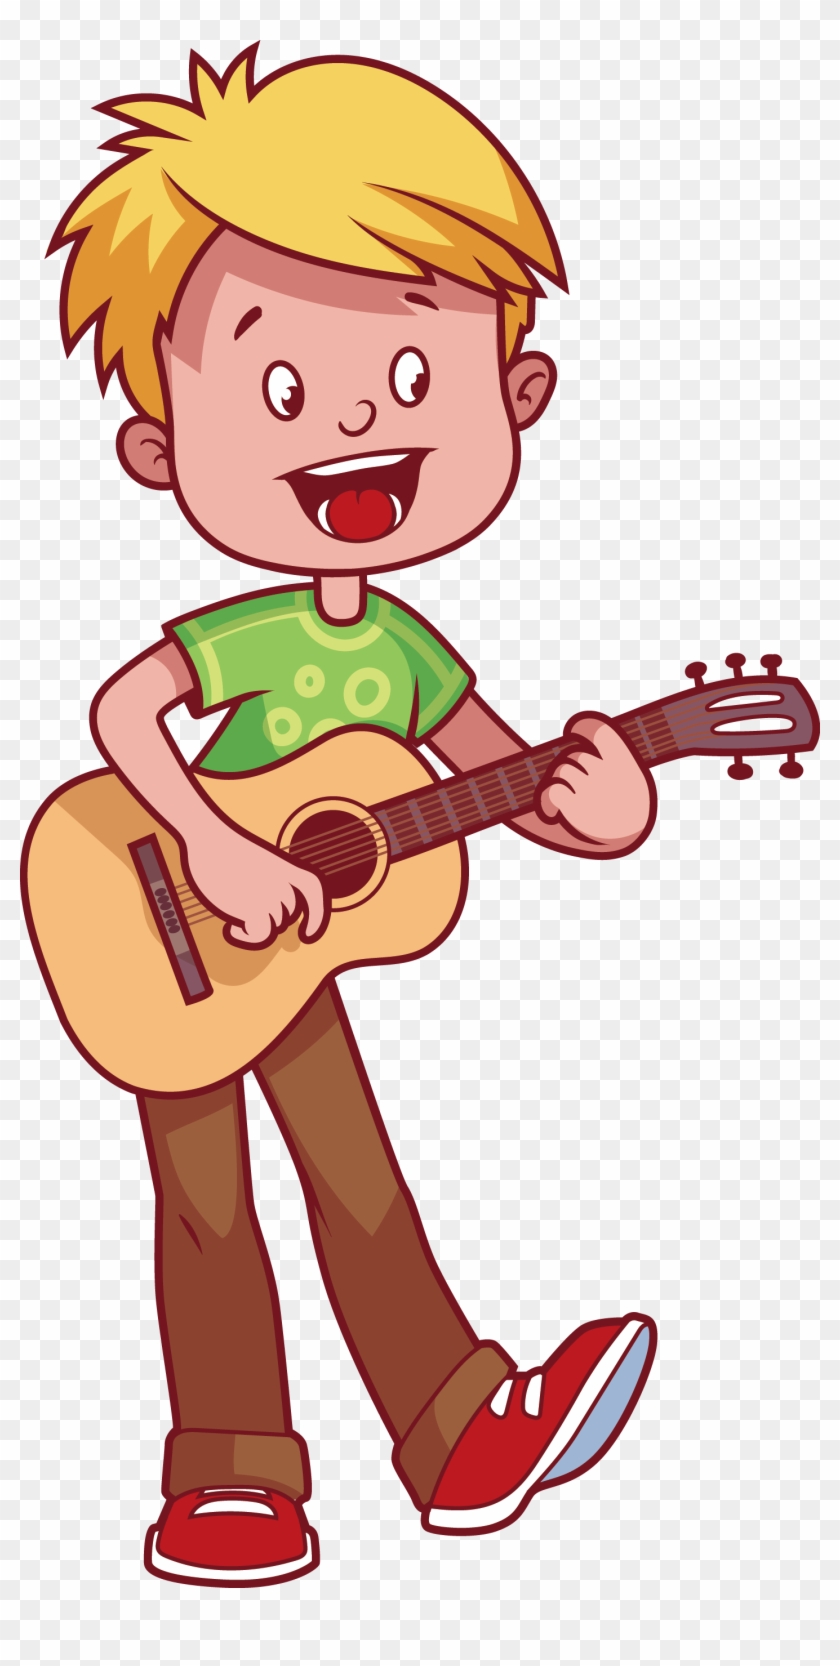 Musical Instrument Child Clip Art - Menino Tocando Violao Desenho #907670